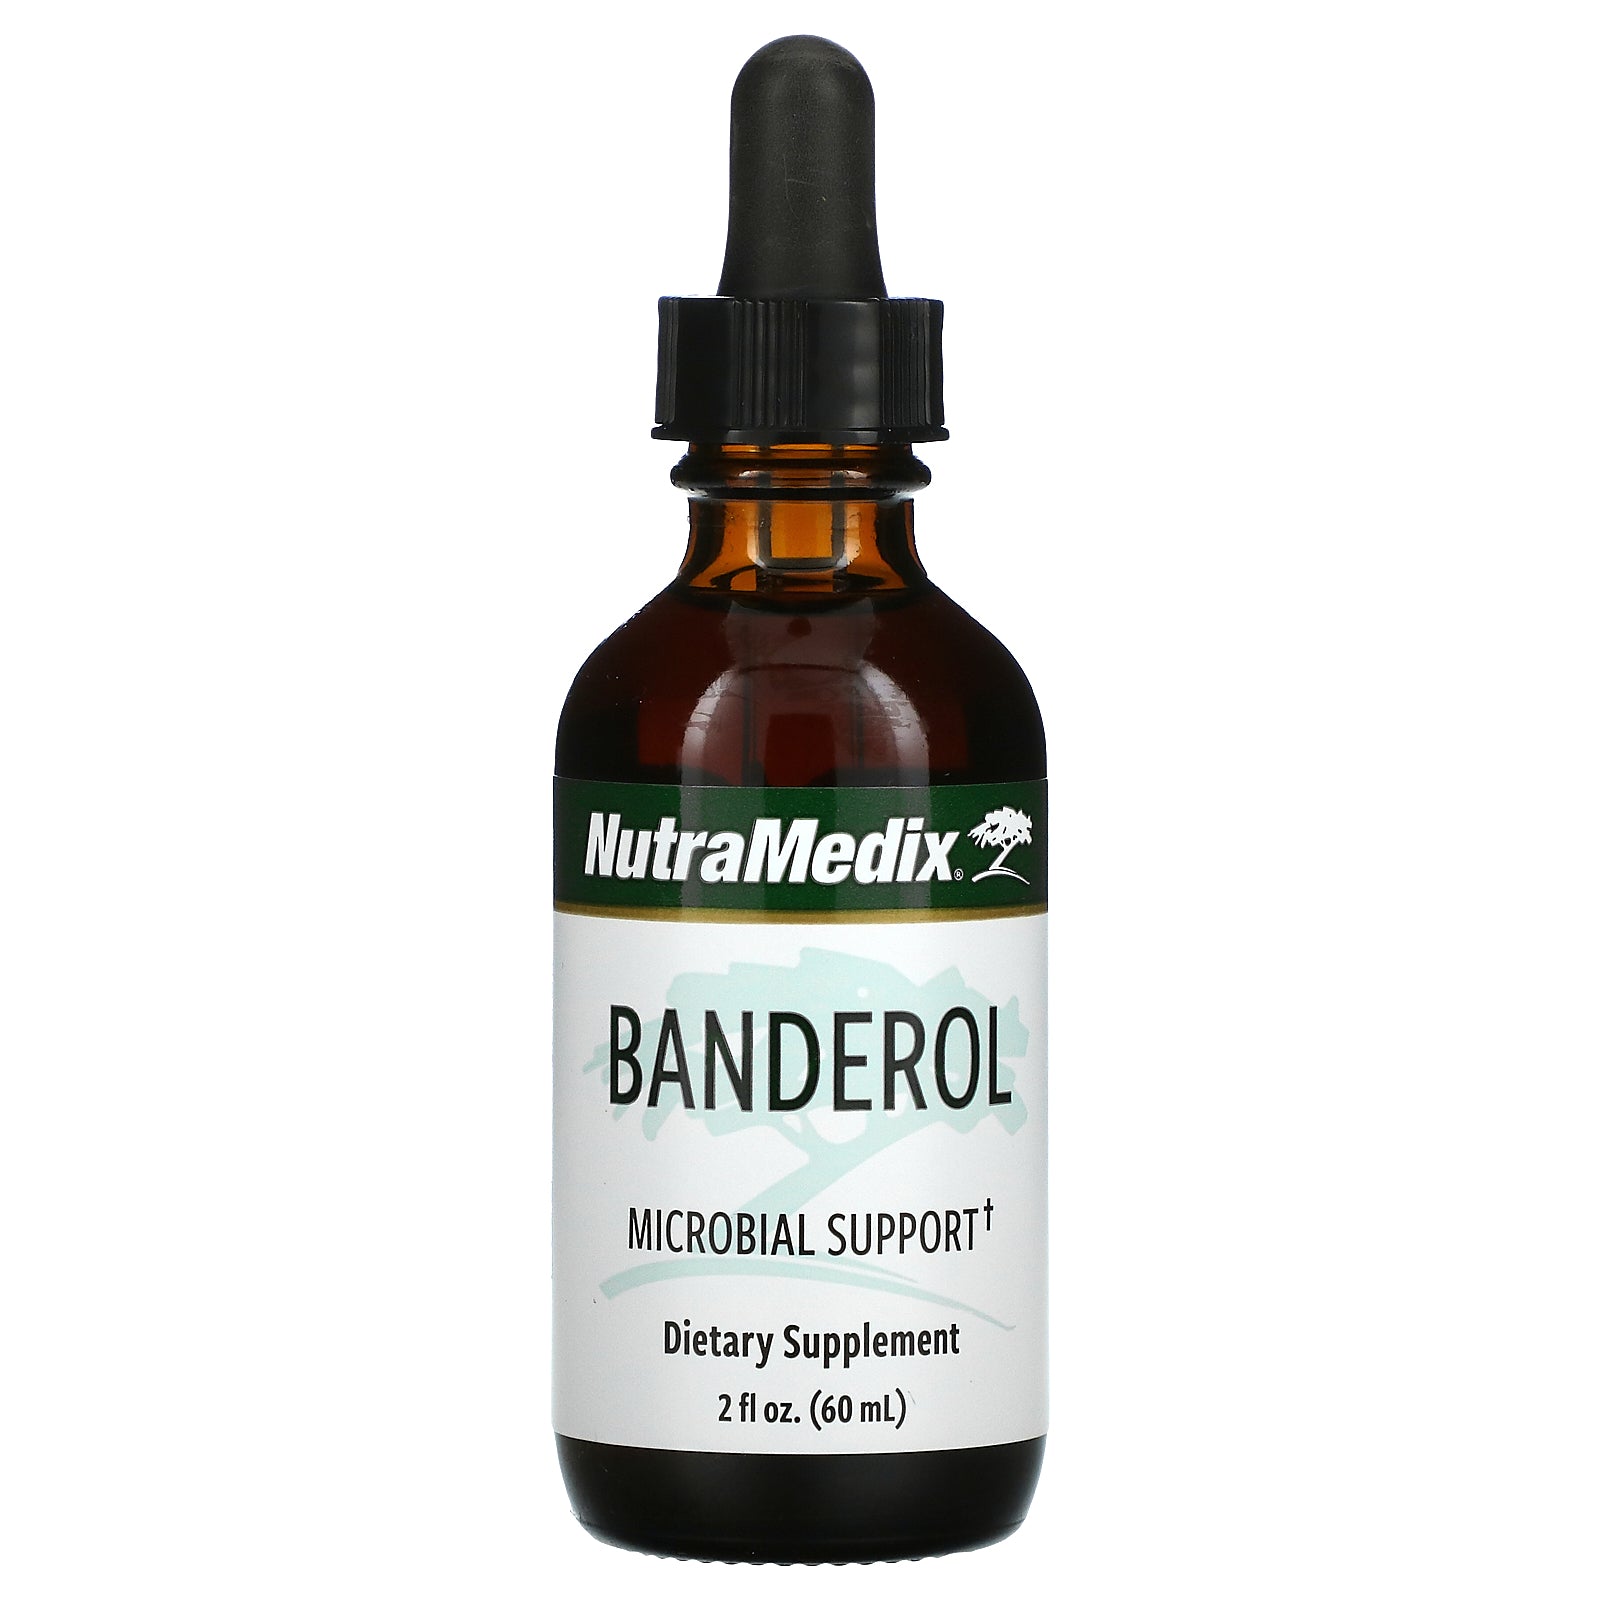 NutraMedix, Banderol, Microbial Support